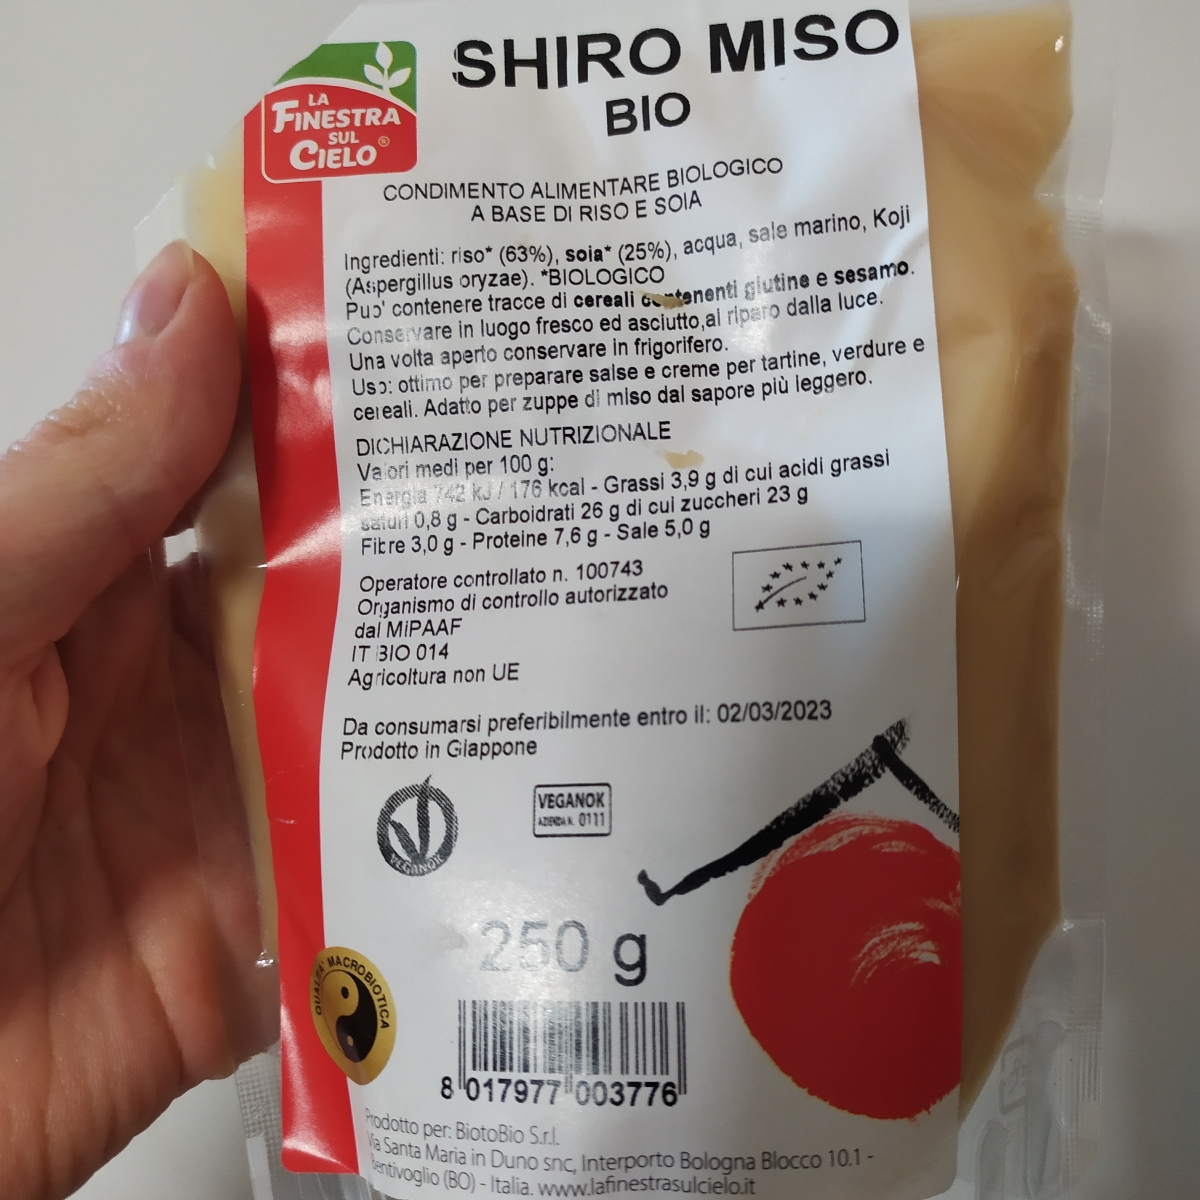 Shiro miso - Miso di riso e soia - La Finestra sul Cielo